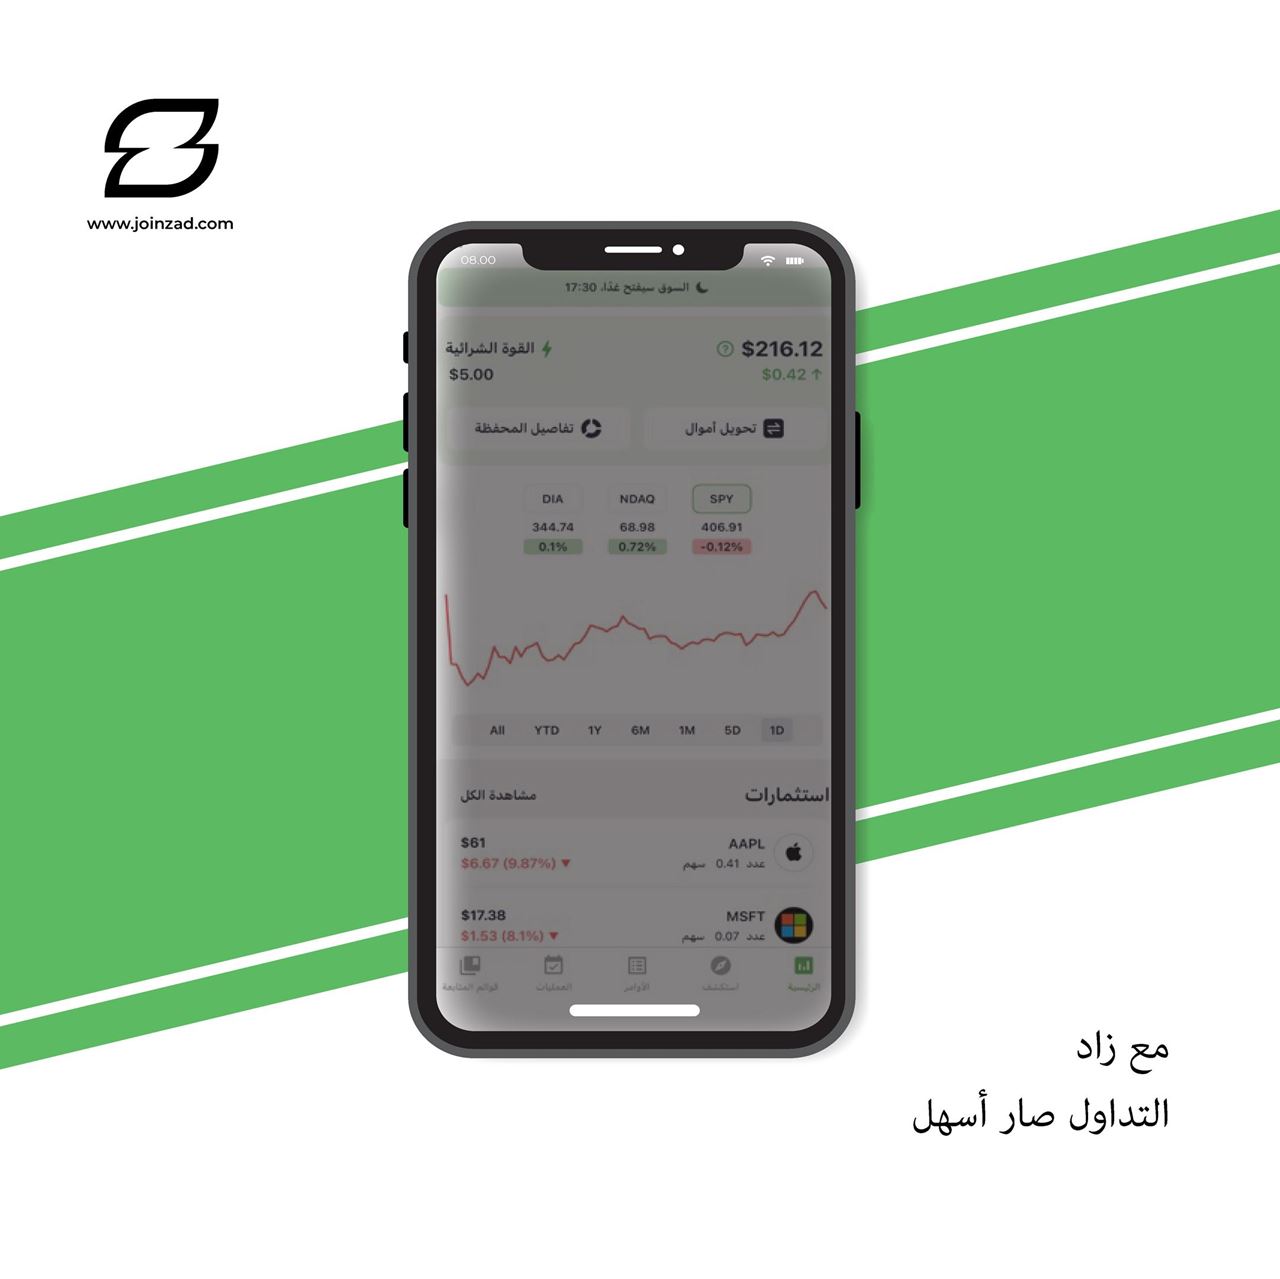 زاد: أول منصة تكنولوجيا مالية كويتية تستقطب الجميع للاستثمار